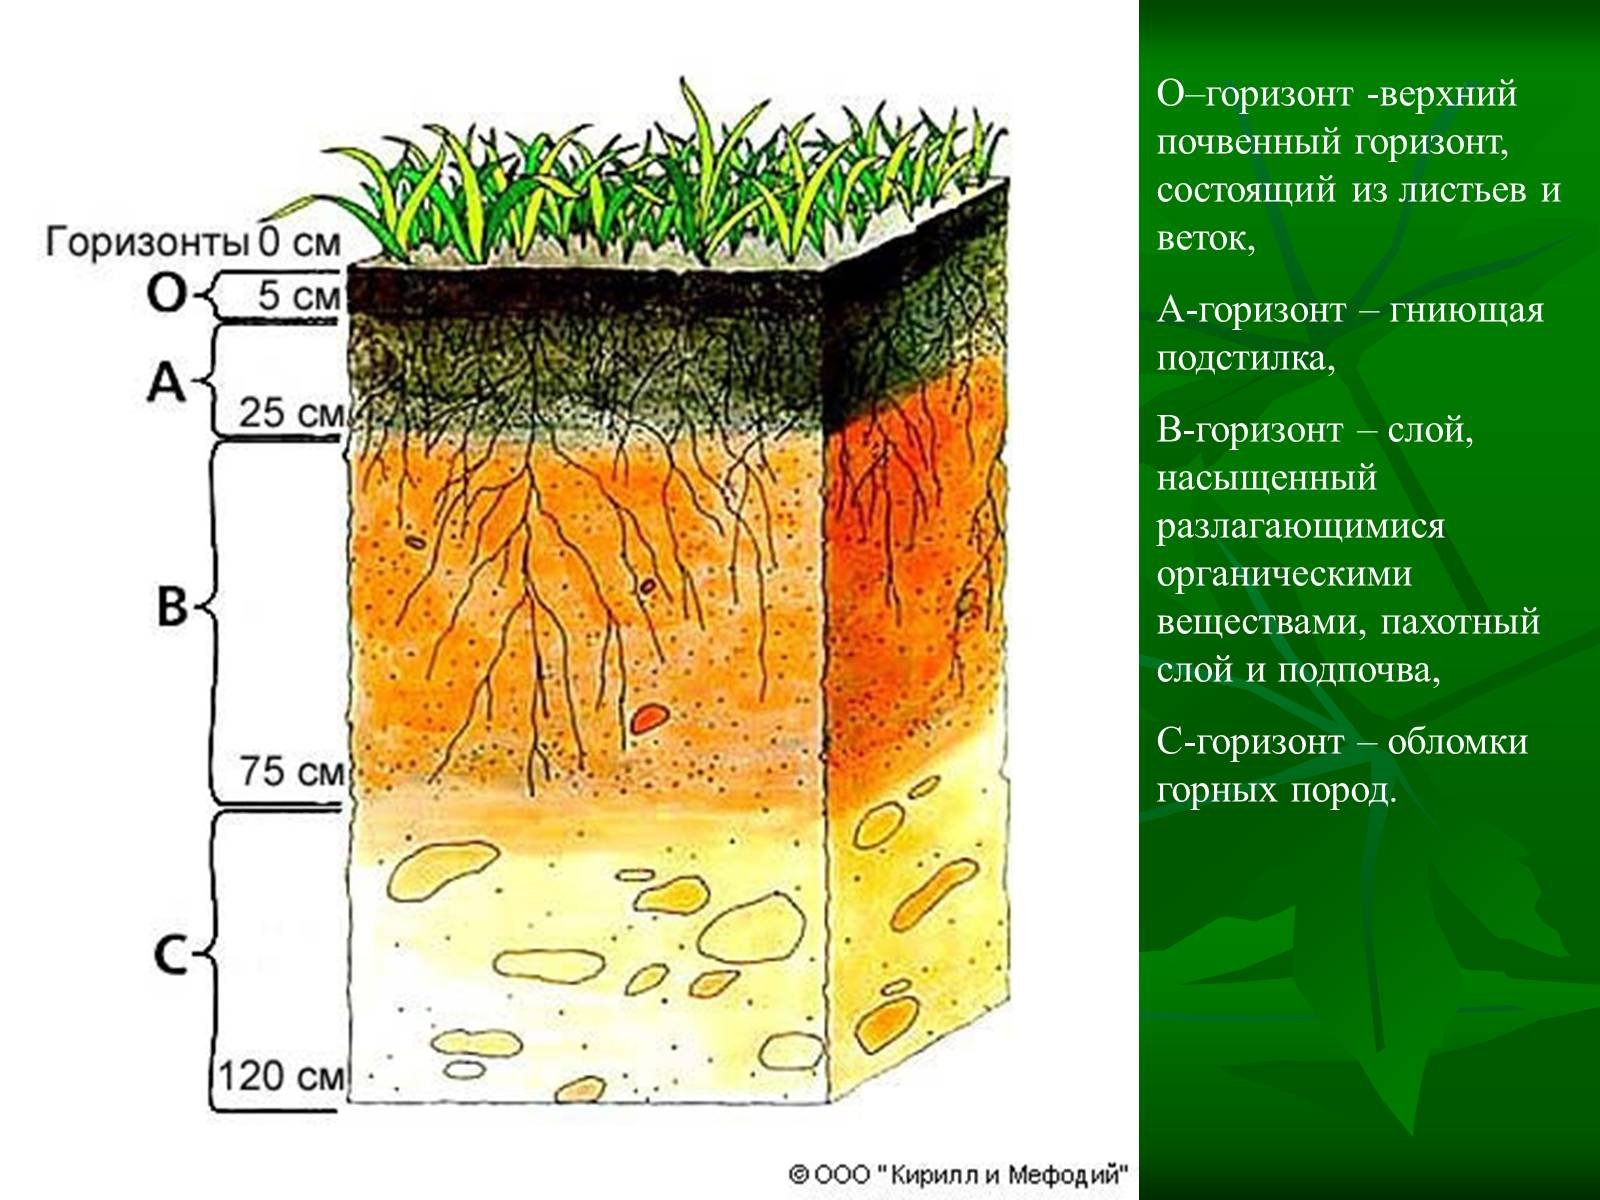 Горизонты горных пород. Строение почвы почвенные горизонты. Структура почвы почвенные горизонты. Слой почвенного горизонта. Почвенный профиль гумусовый Горизонт.